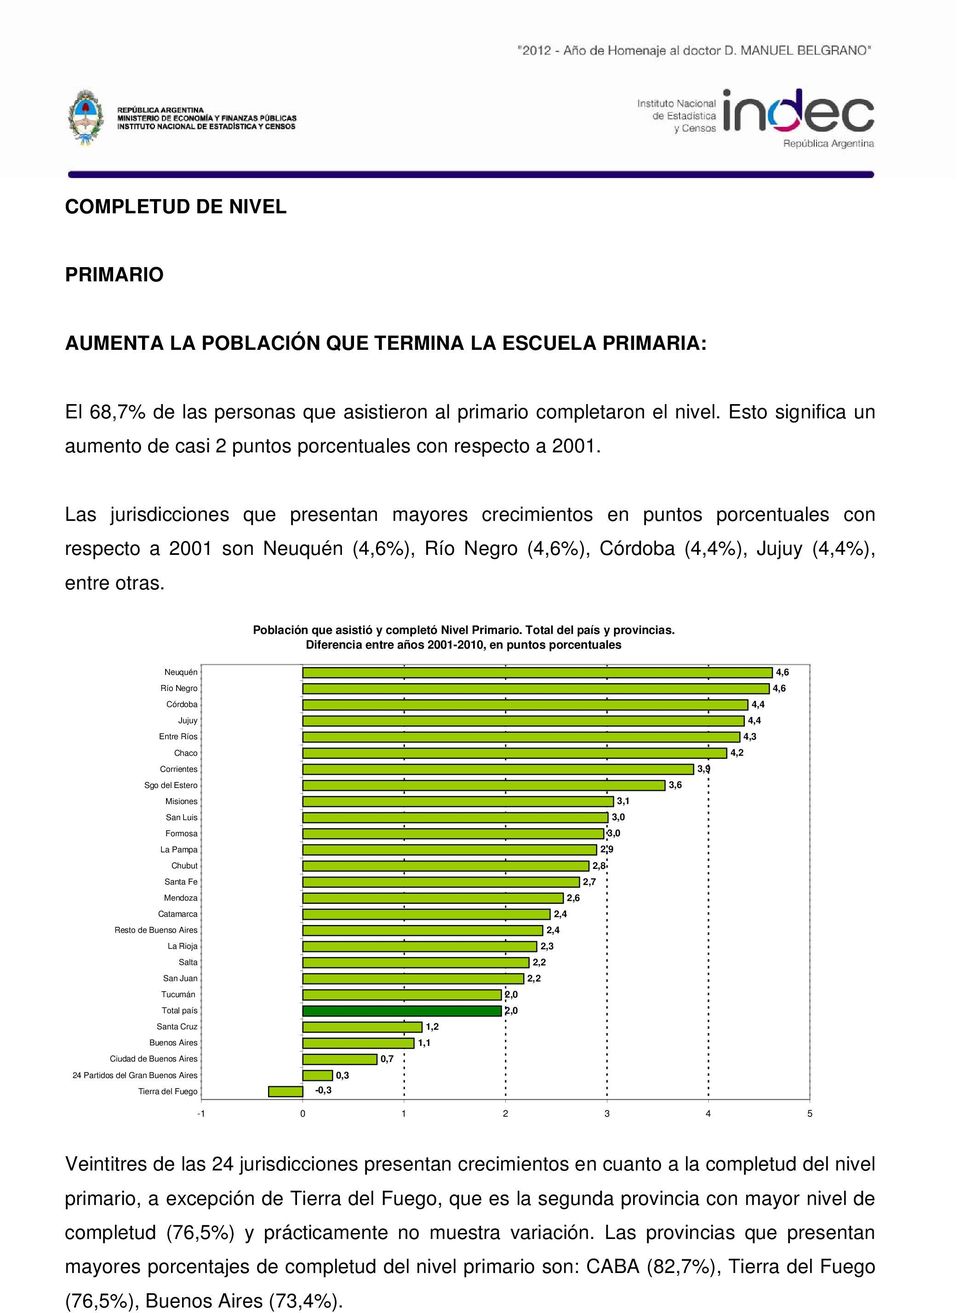 Las jurisdicciones que presentan mayores crecimientos en puntos porcentuales con respecto a 2001 son Neuquén (4,6%), Río Negro (4,6%), Córdoba (4,4%), Jujuy (4,4%), entre otras.